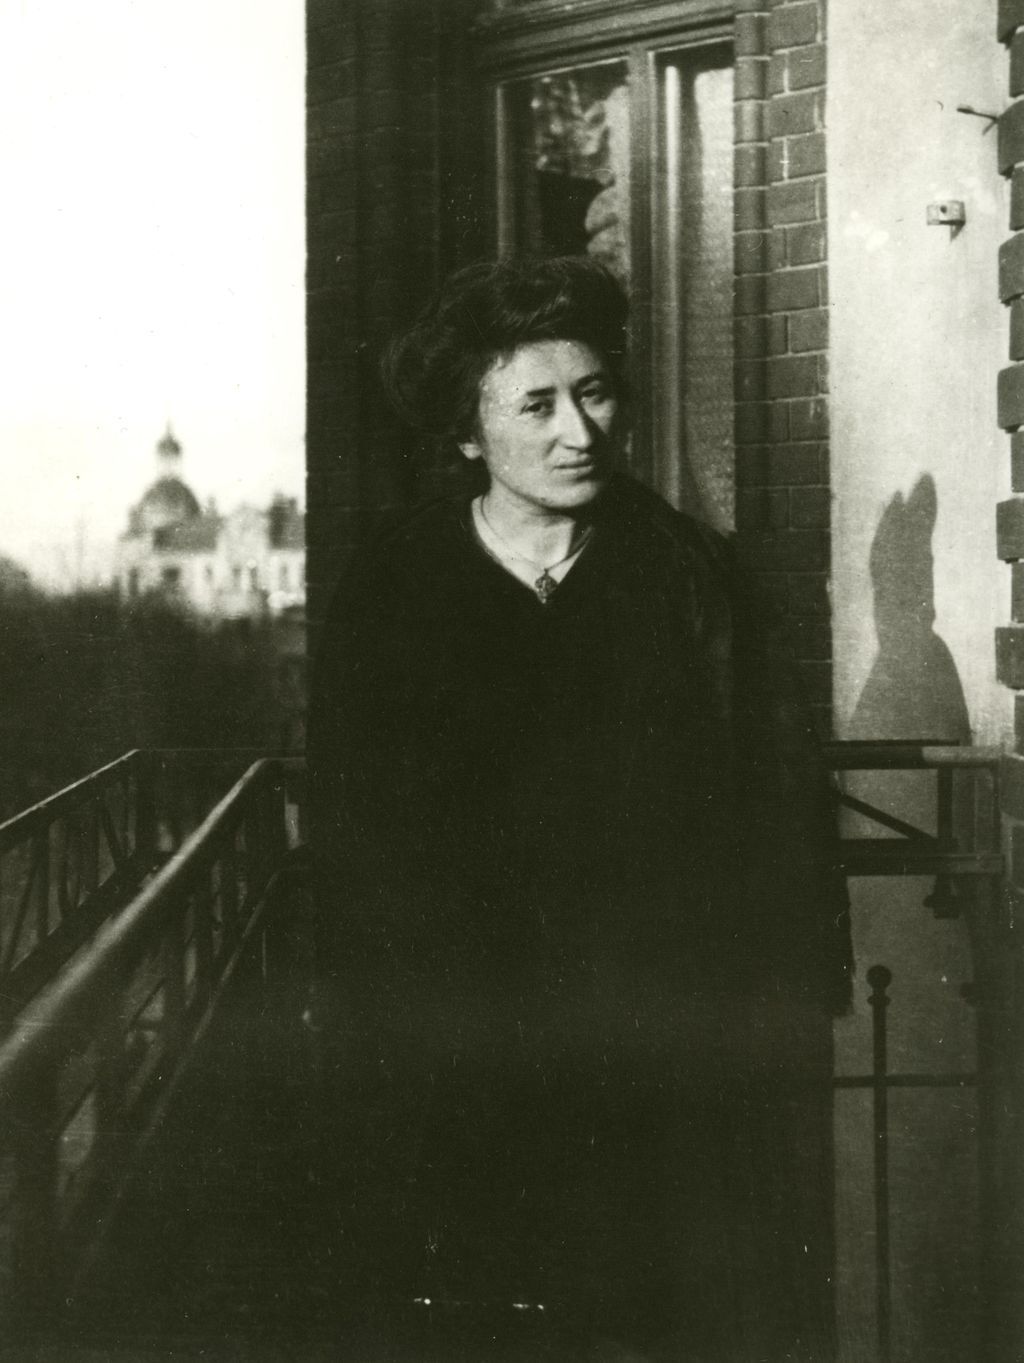 [Foto: Rosa Luxemburg, um 1910]